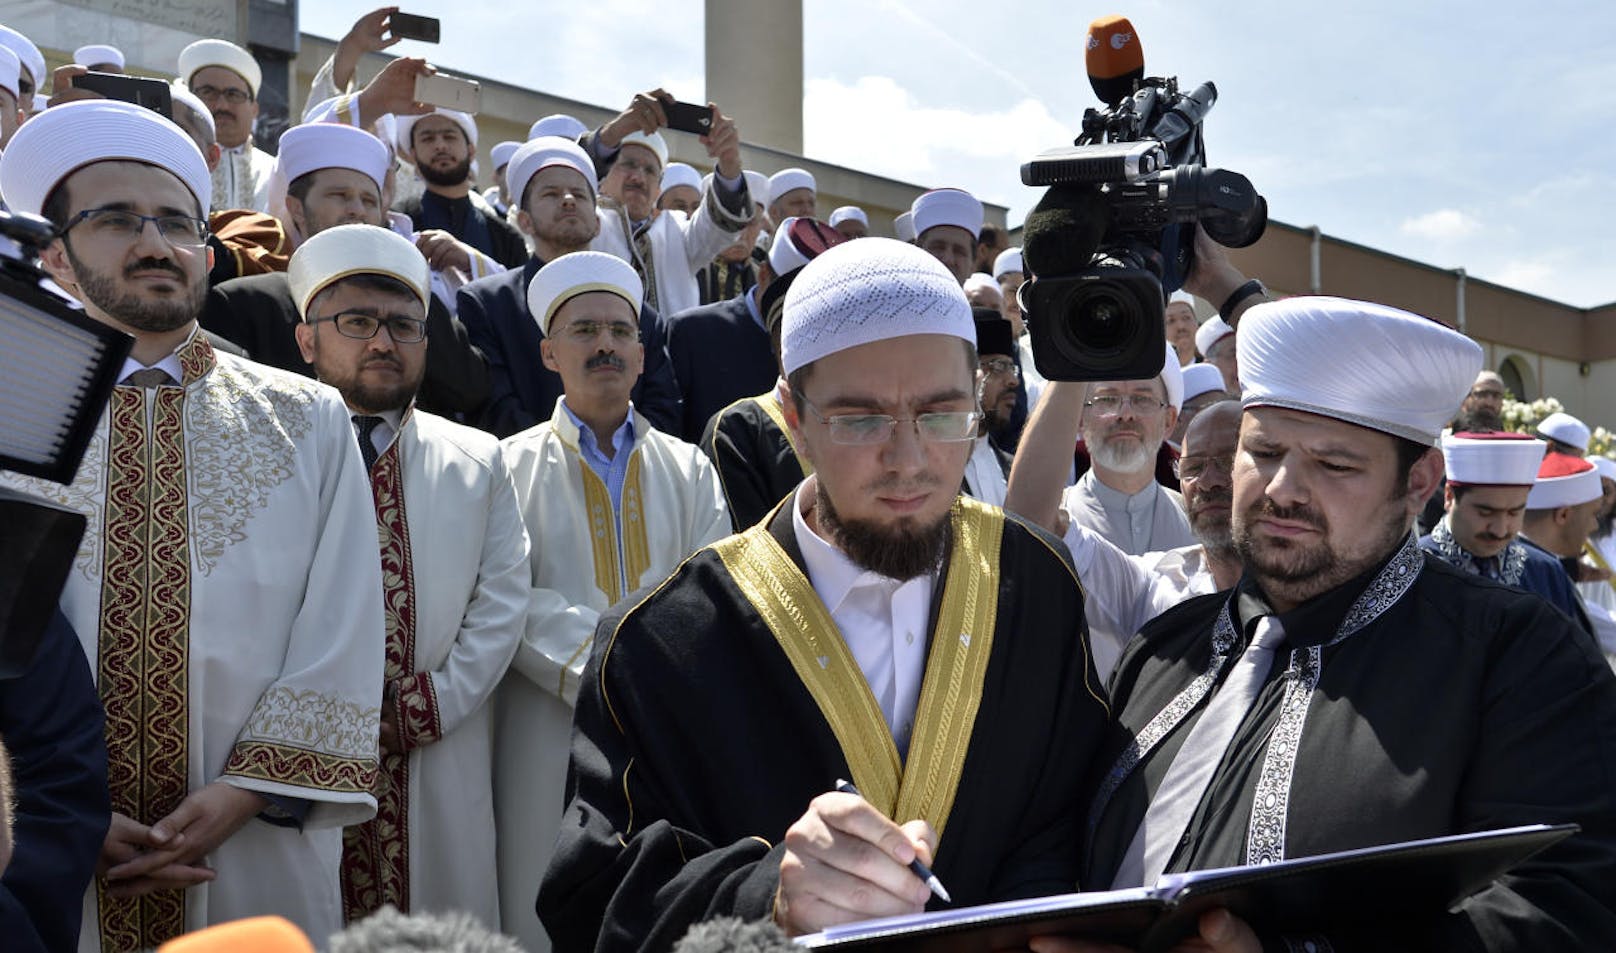 Ramazan Demir (r.) bei der Unterzeichnung einer Erklärung gegen Extremismus mit anderen österreichischen Imamen.